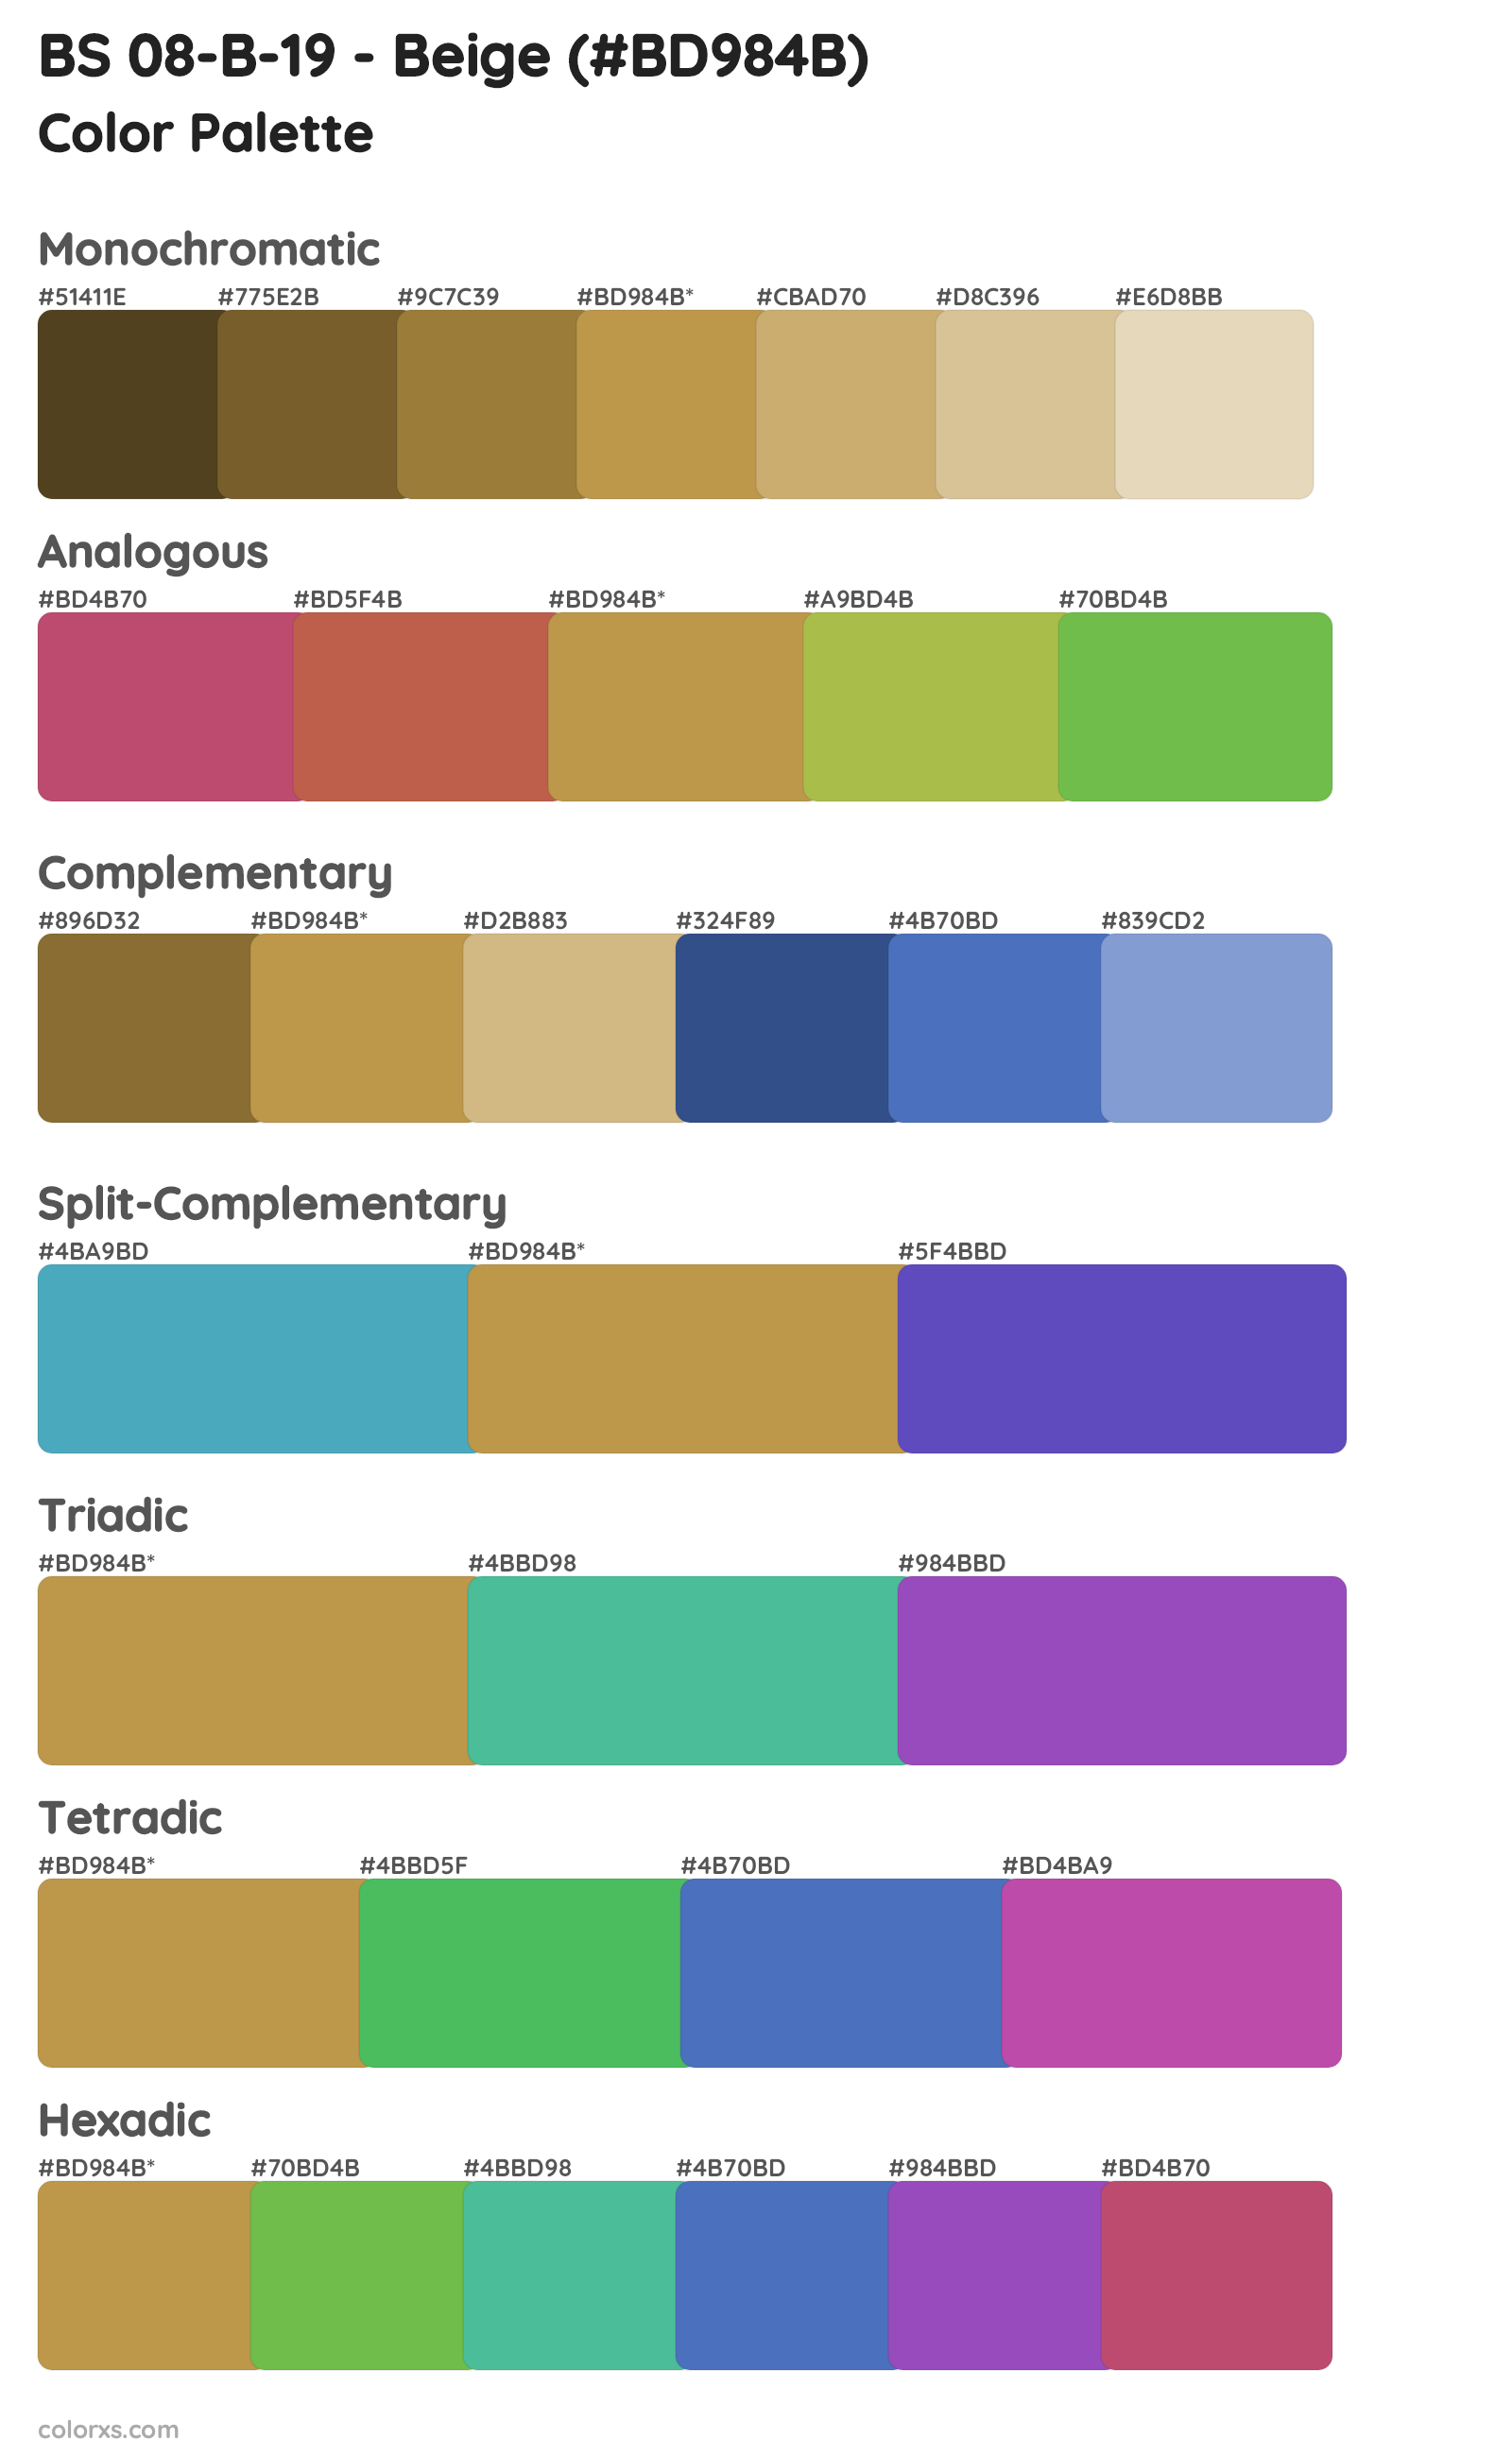 BS 08-B-19 - Beige Color Scheme Palettes